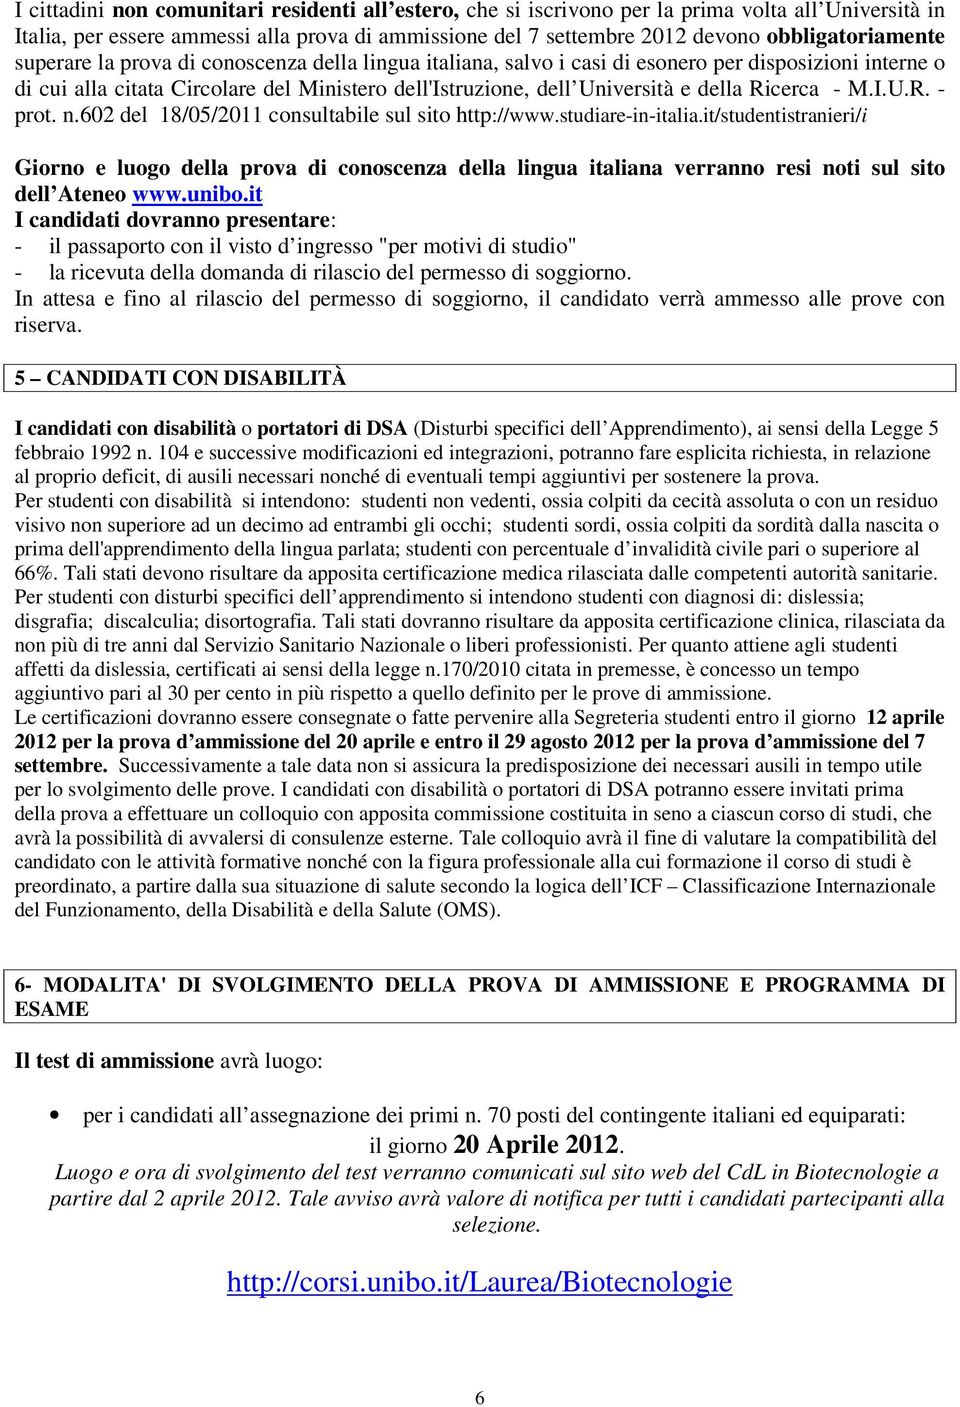 e della Ricerca - M.I.U.R. - prot. n.602 del 18/05/2011 consultabile sul sito http://www.studiare-in-italia.